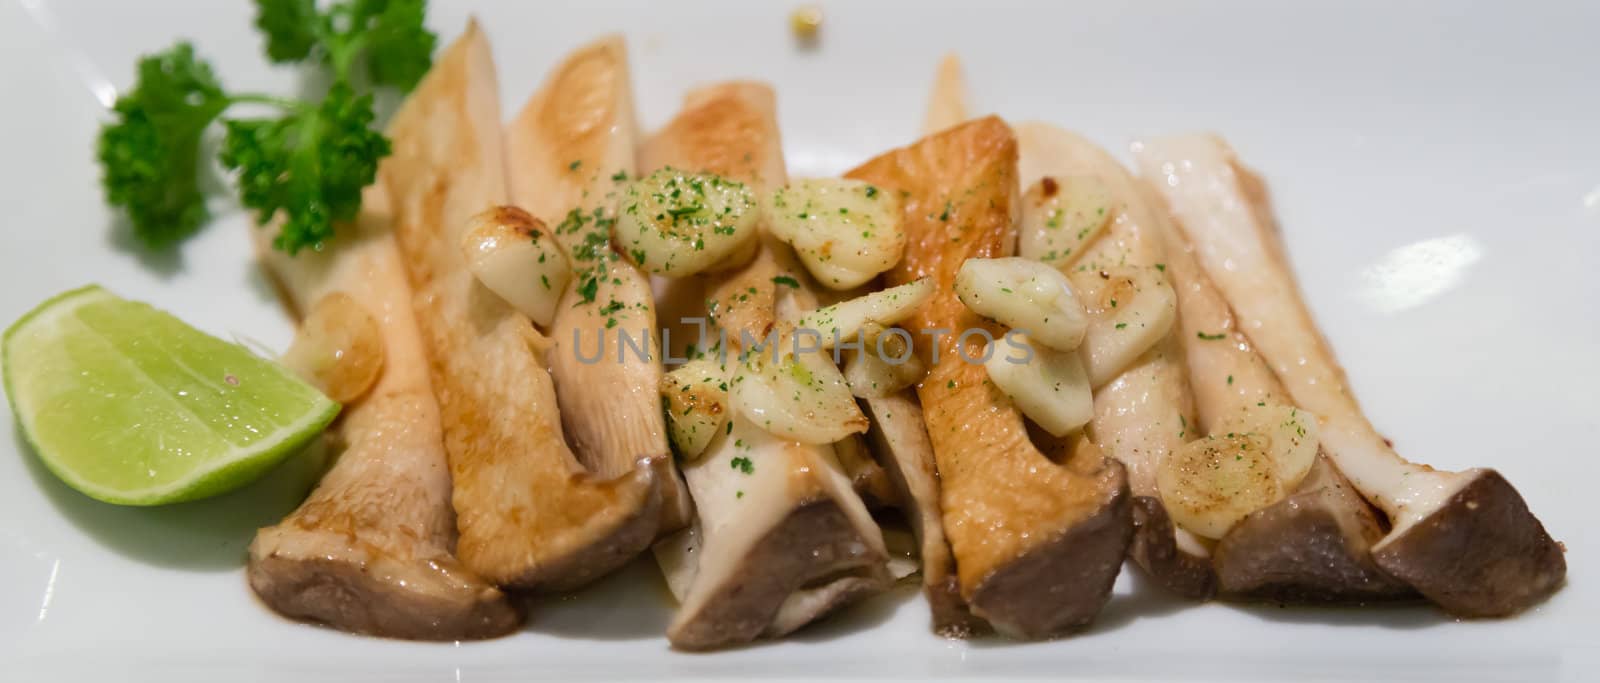 eringi mushrooms fried with garlic japanese food